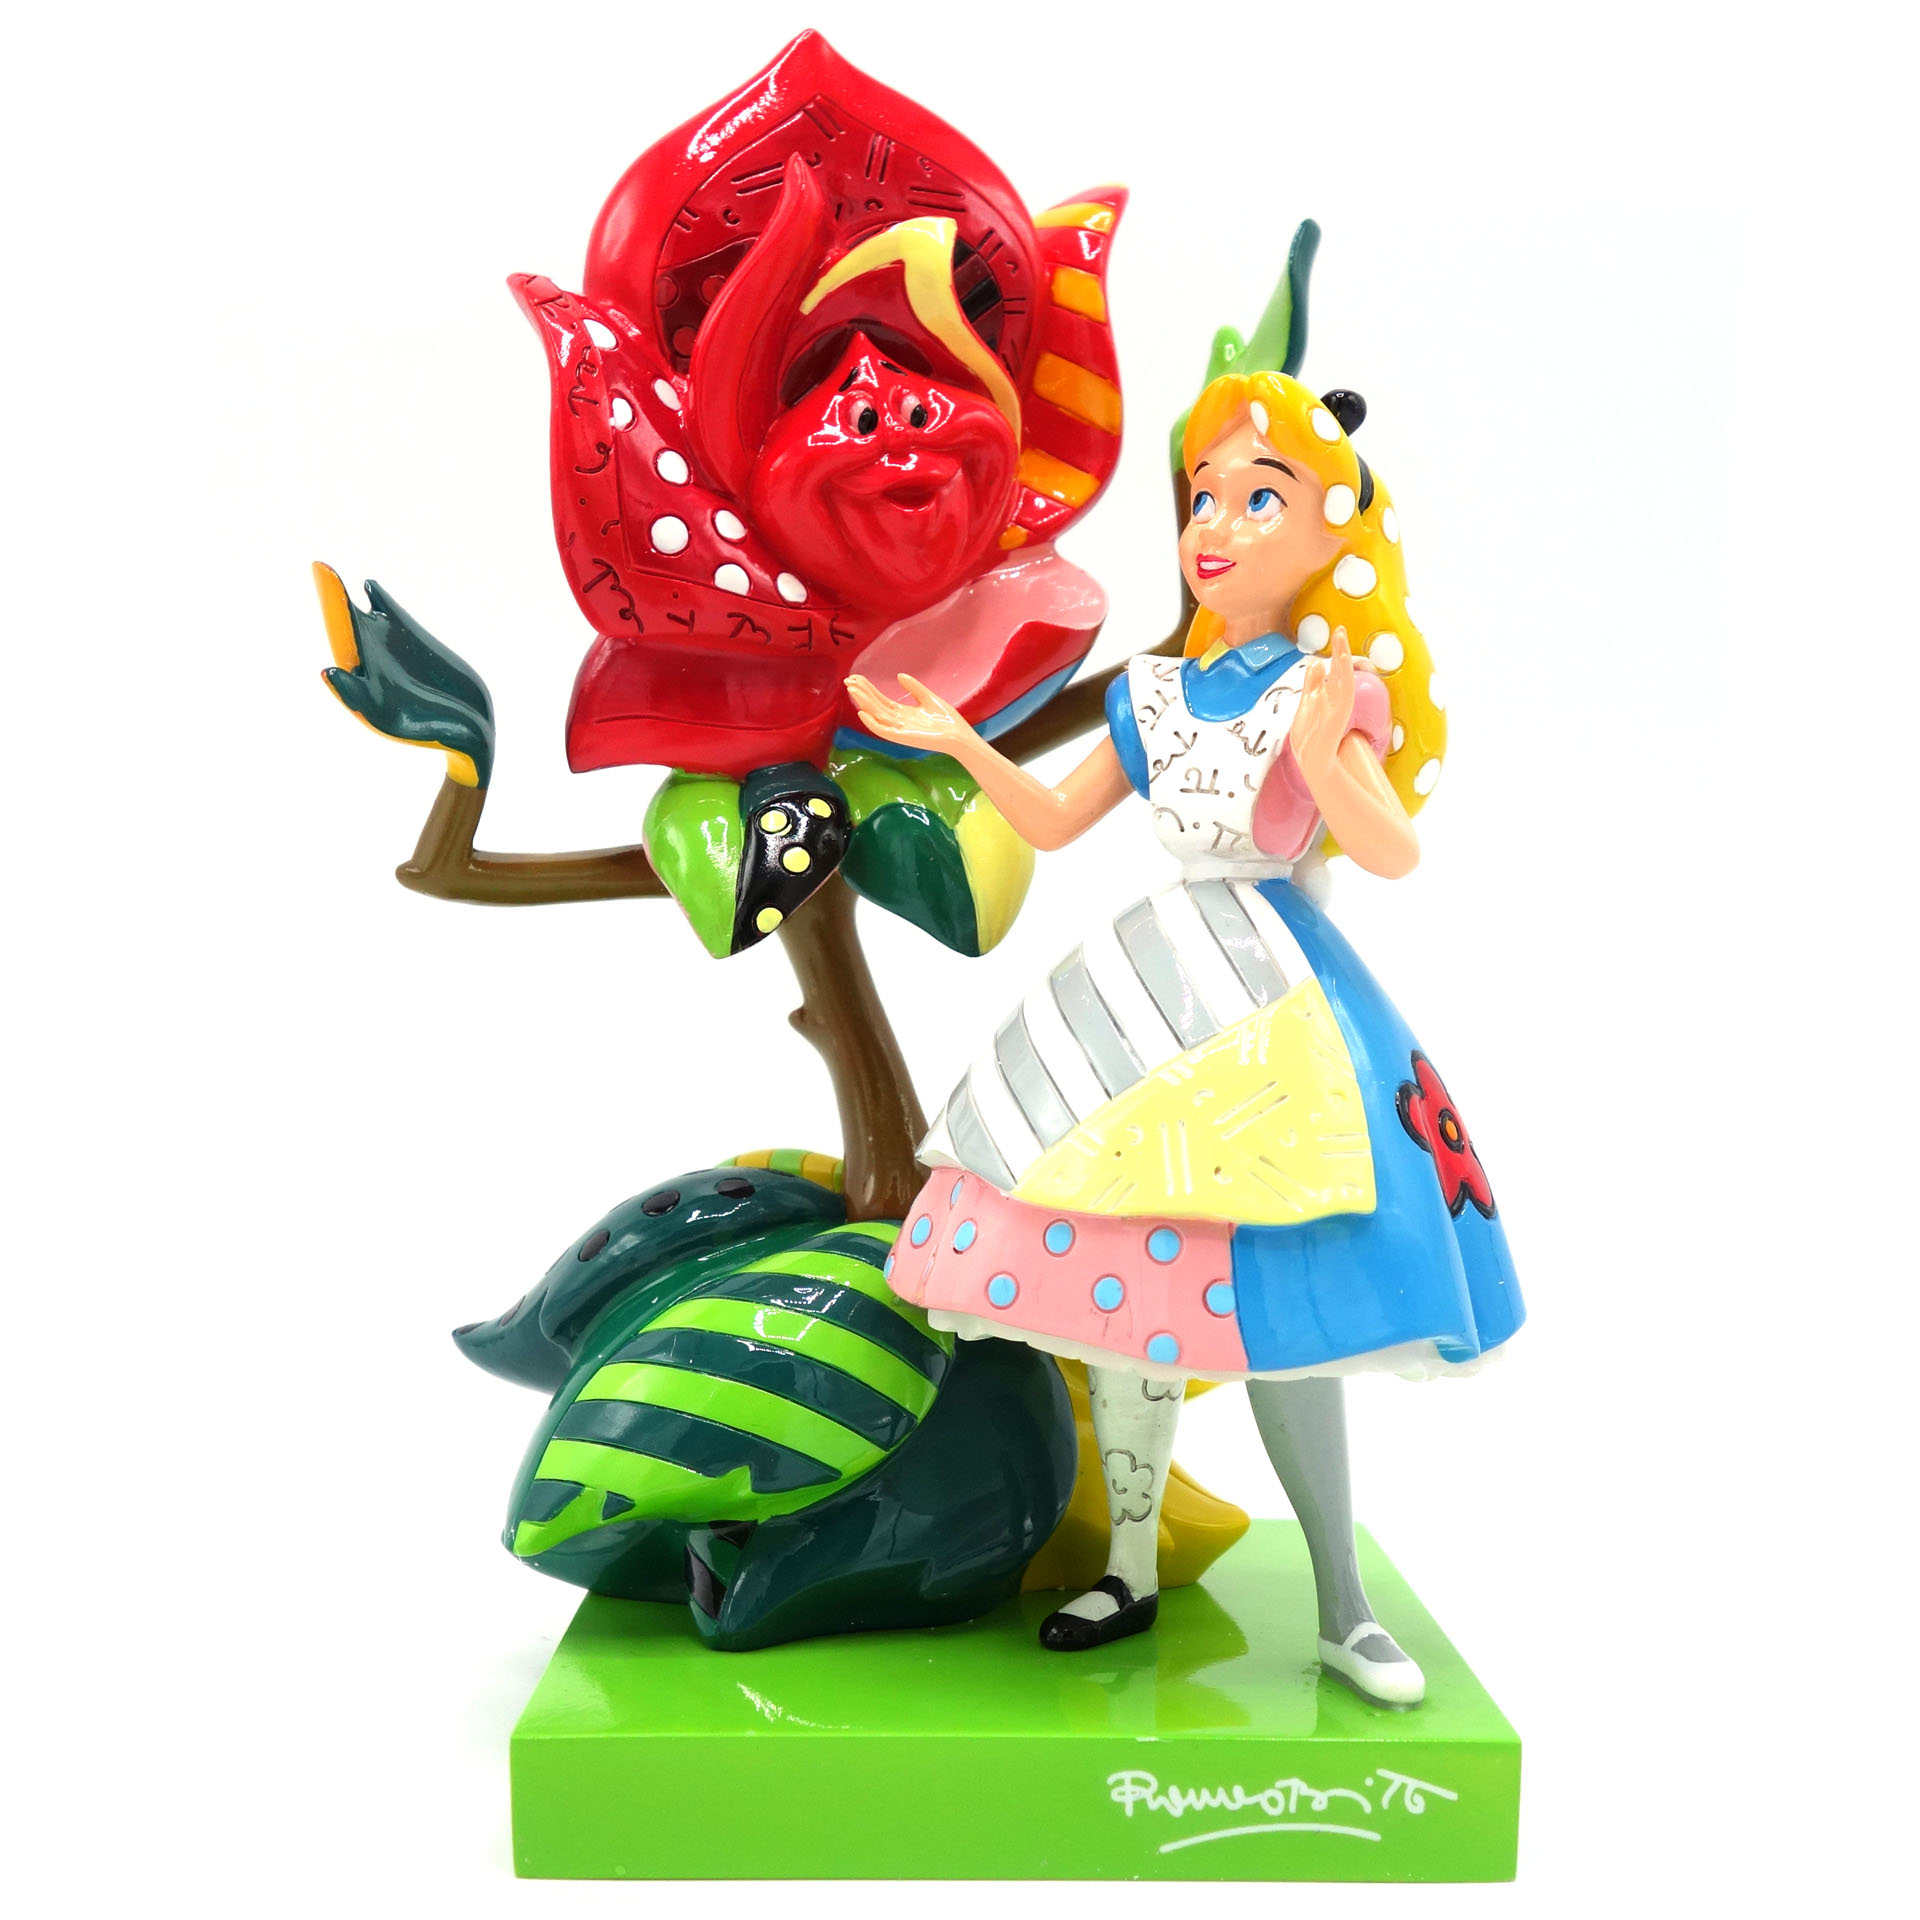 Sammelfigur Disney Alice im Wunderland Alice in Wonderland 6008524